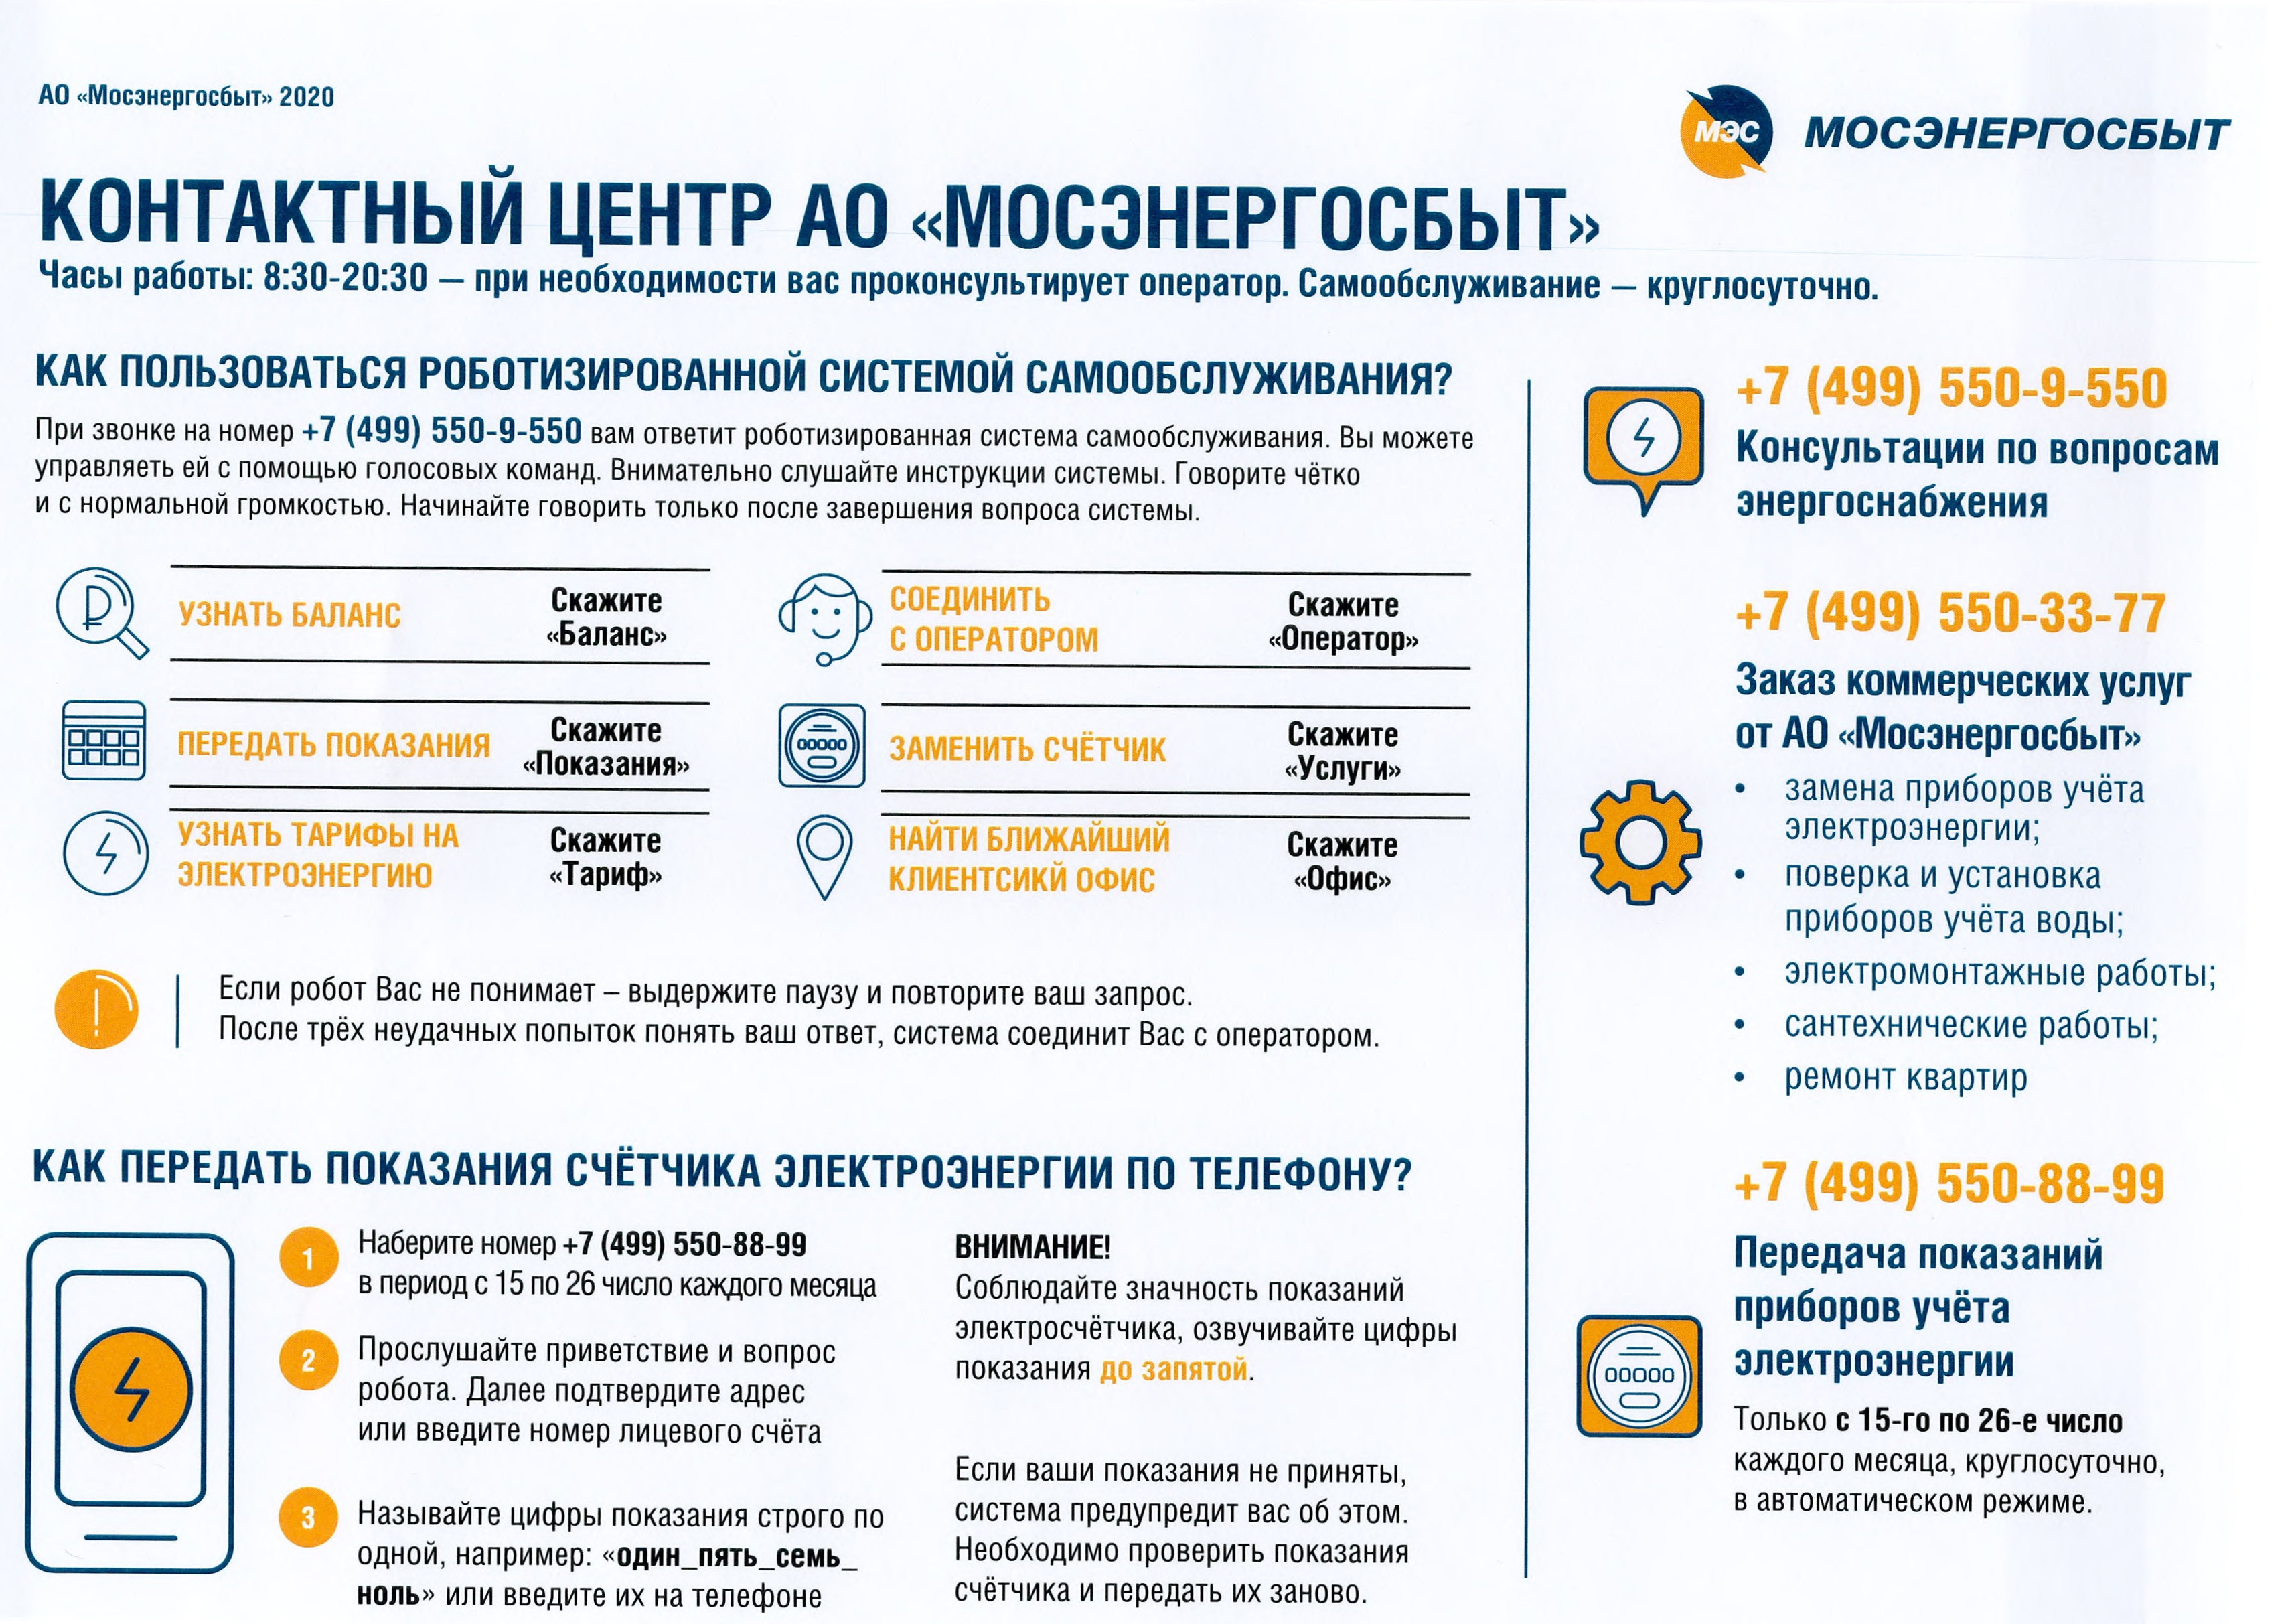 Информация по работе контактного центра АО "Мосэнергосбыт"